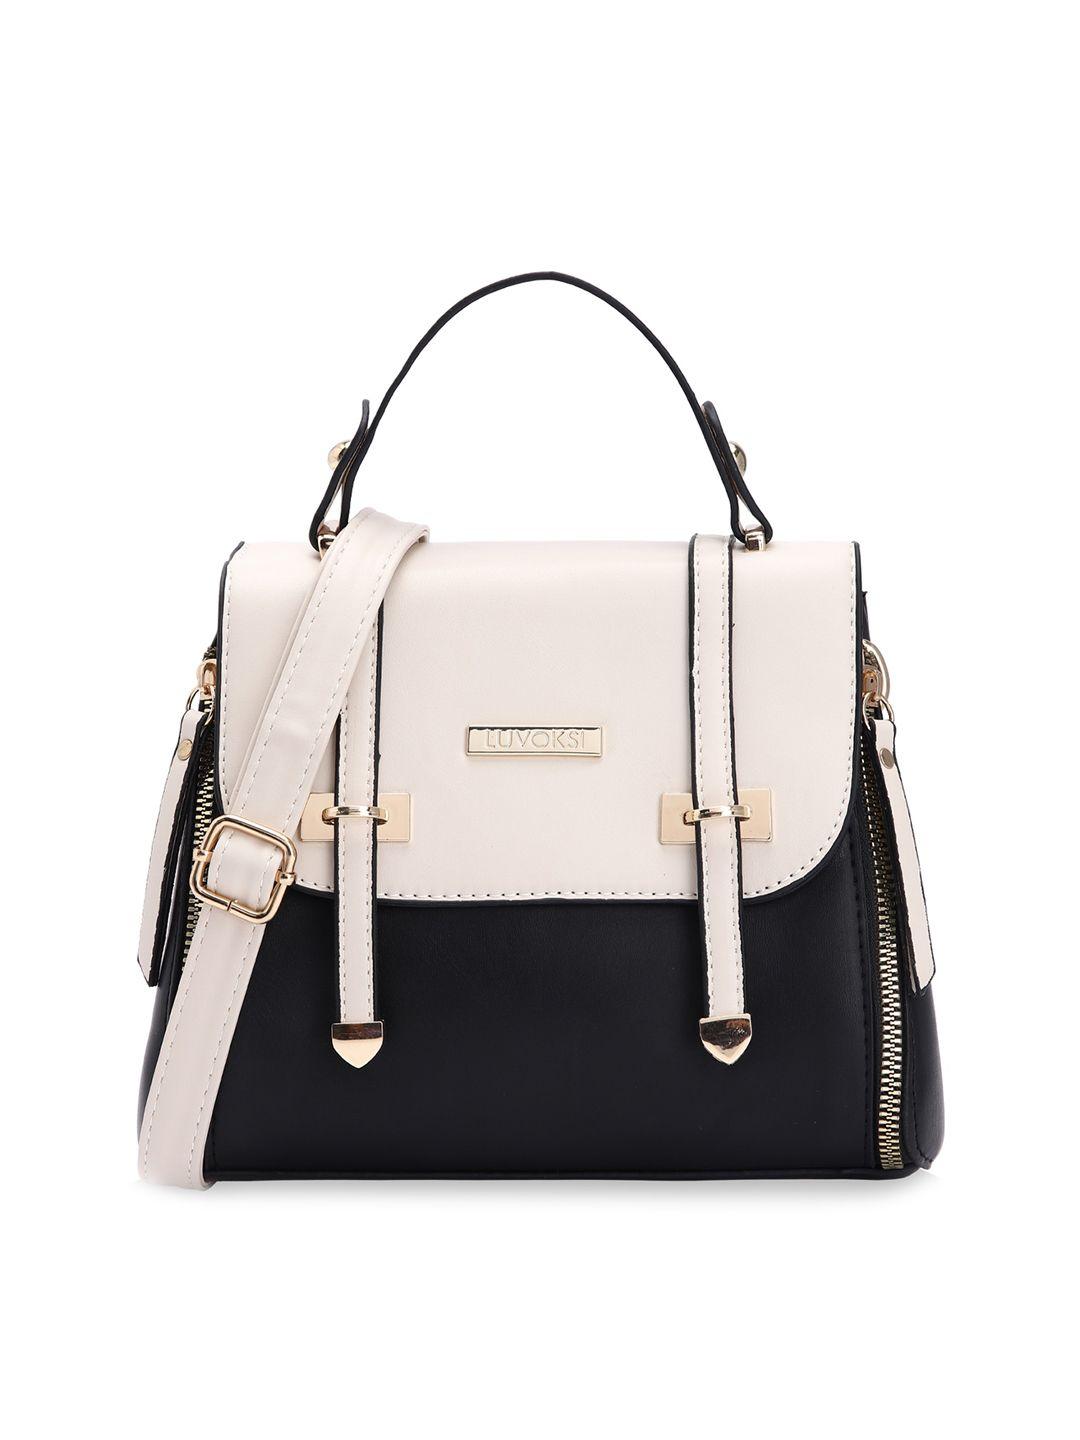 luvoksi colourblocked structured satchel handbags